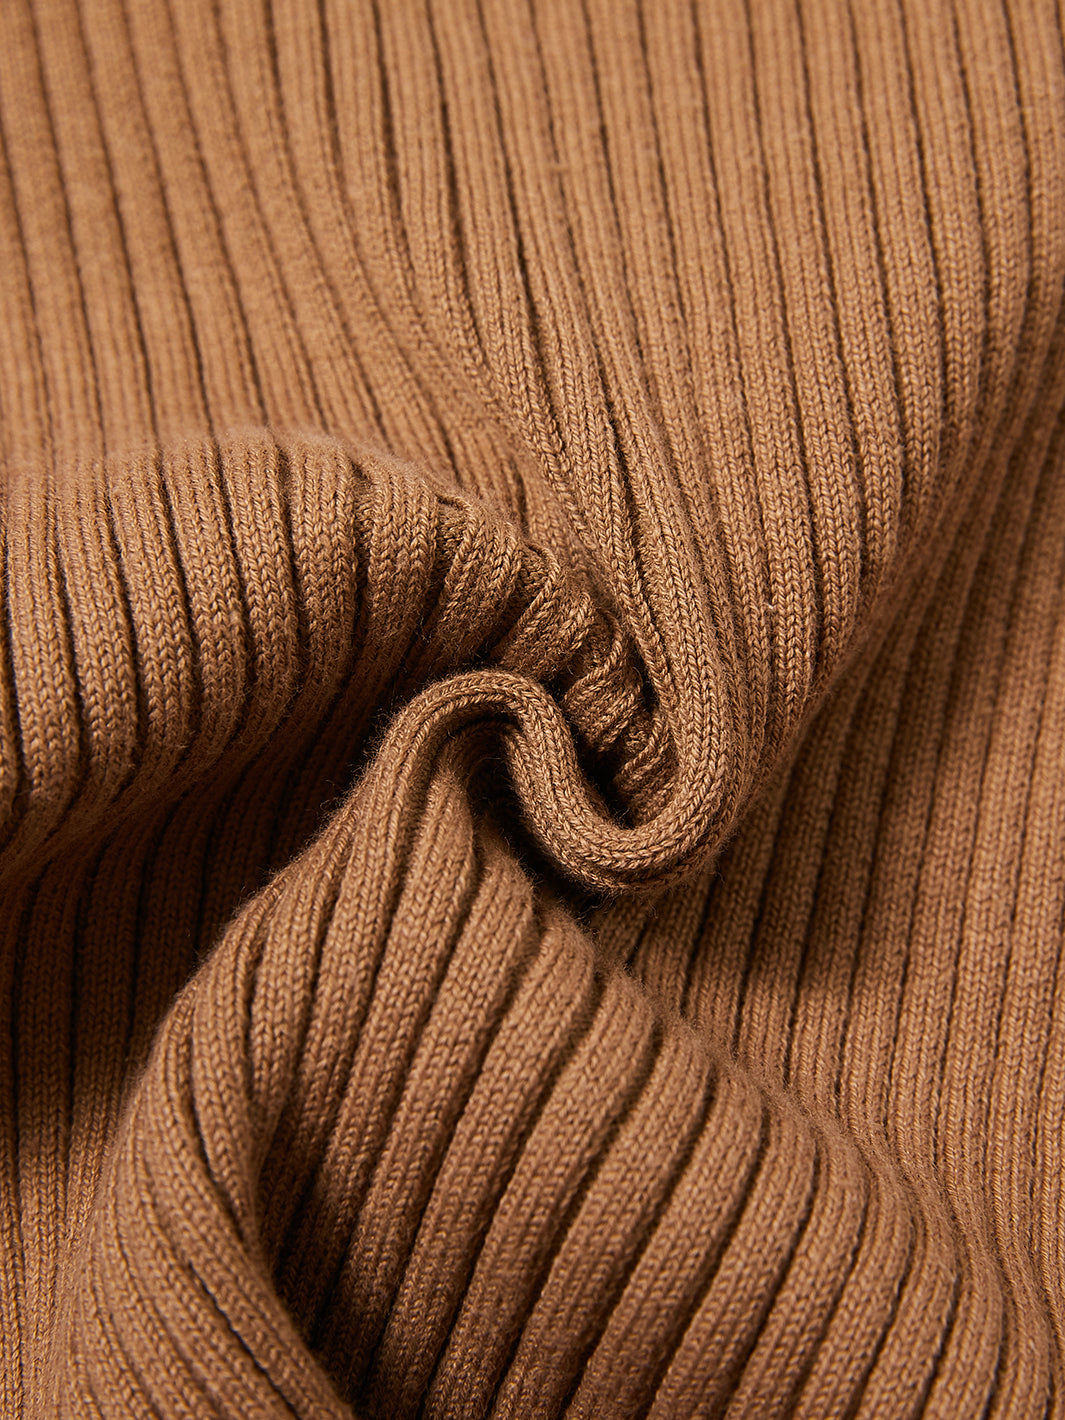 Turtleneck Basic Sweater - Camel